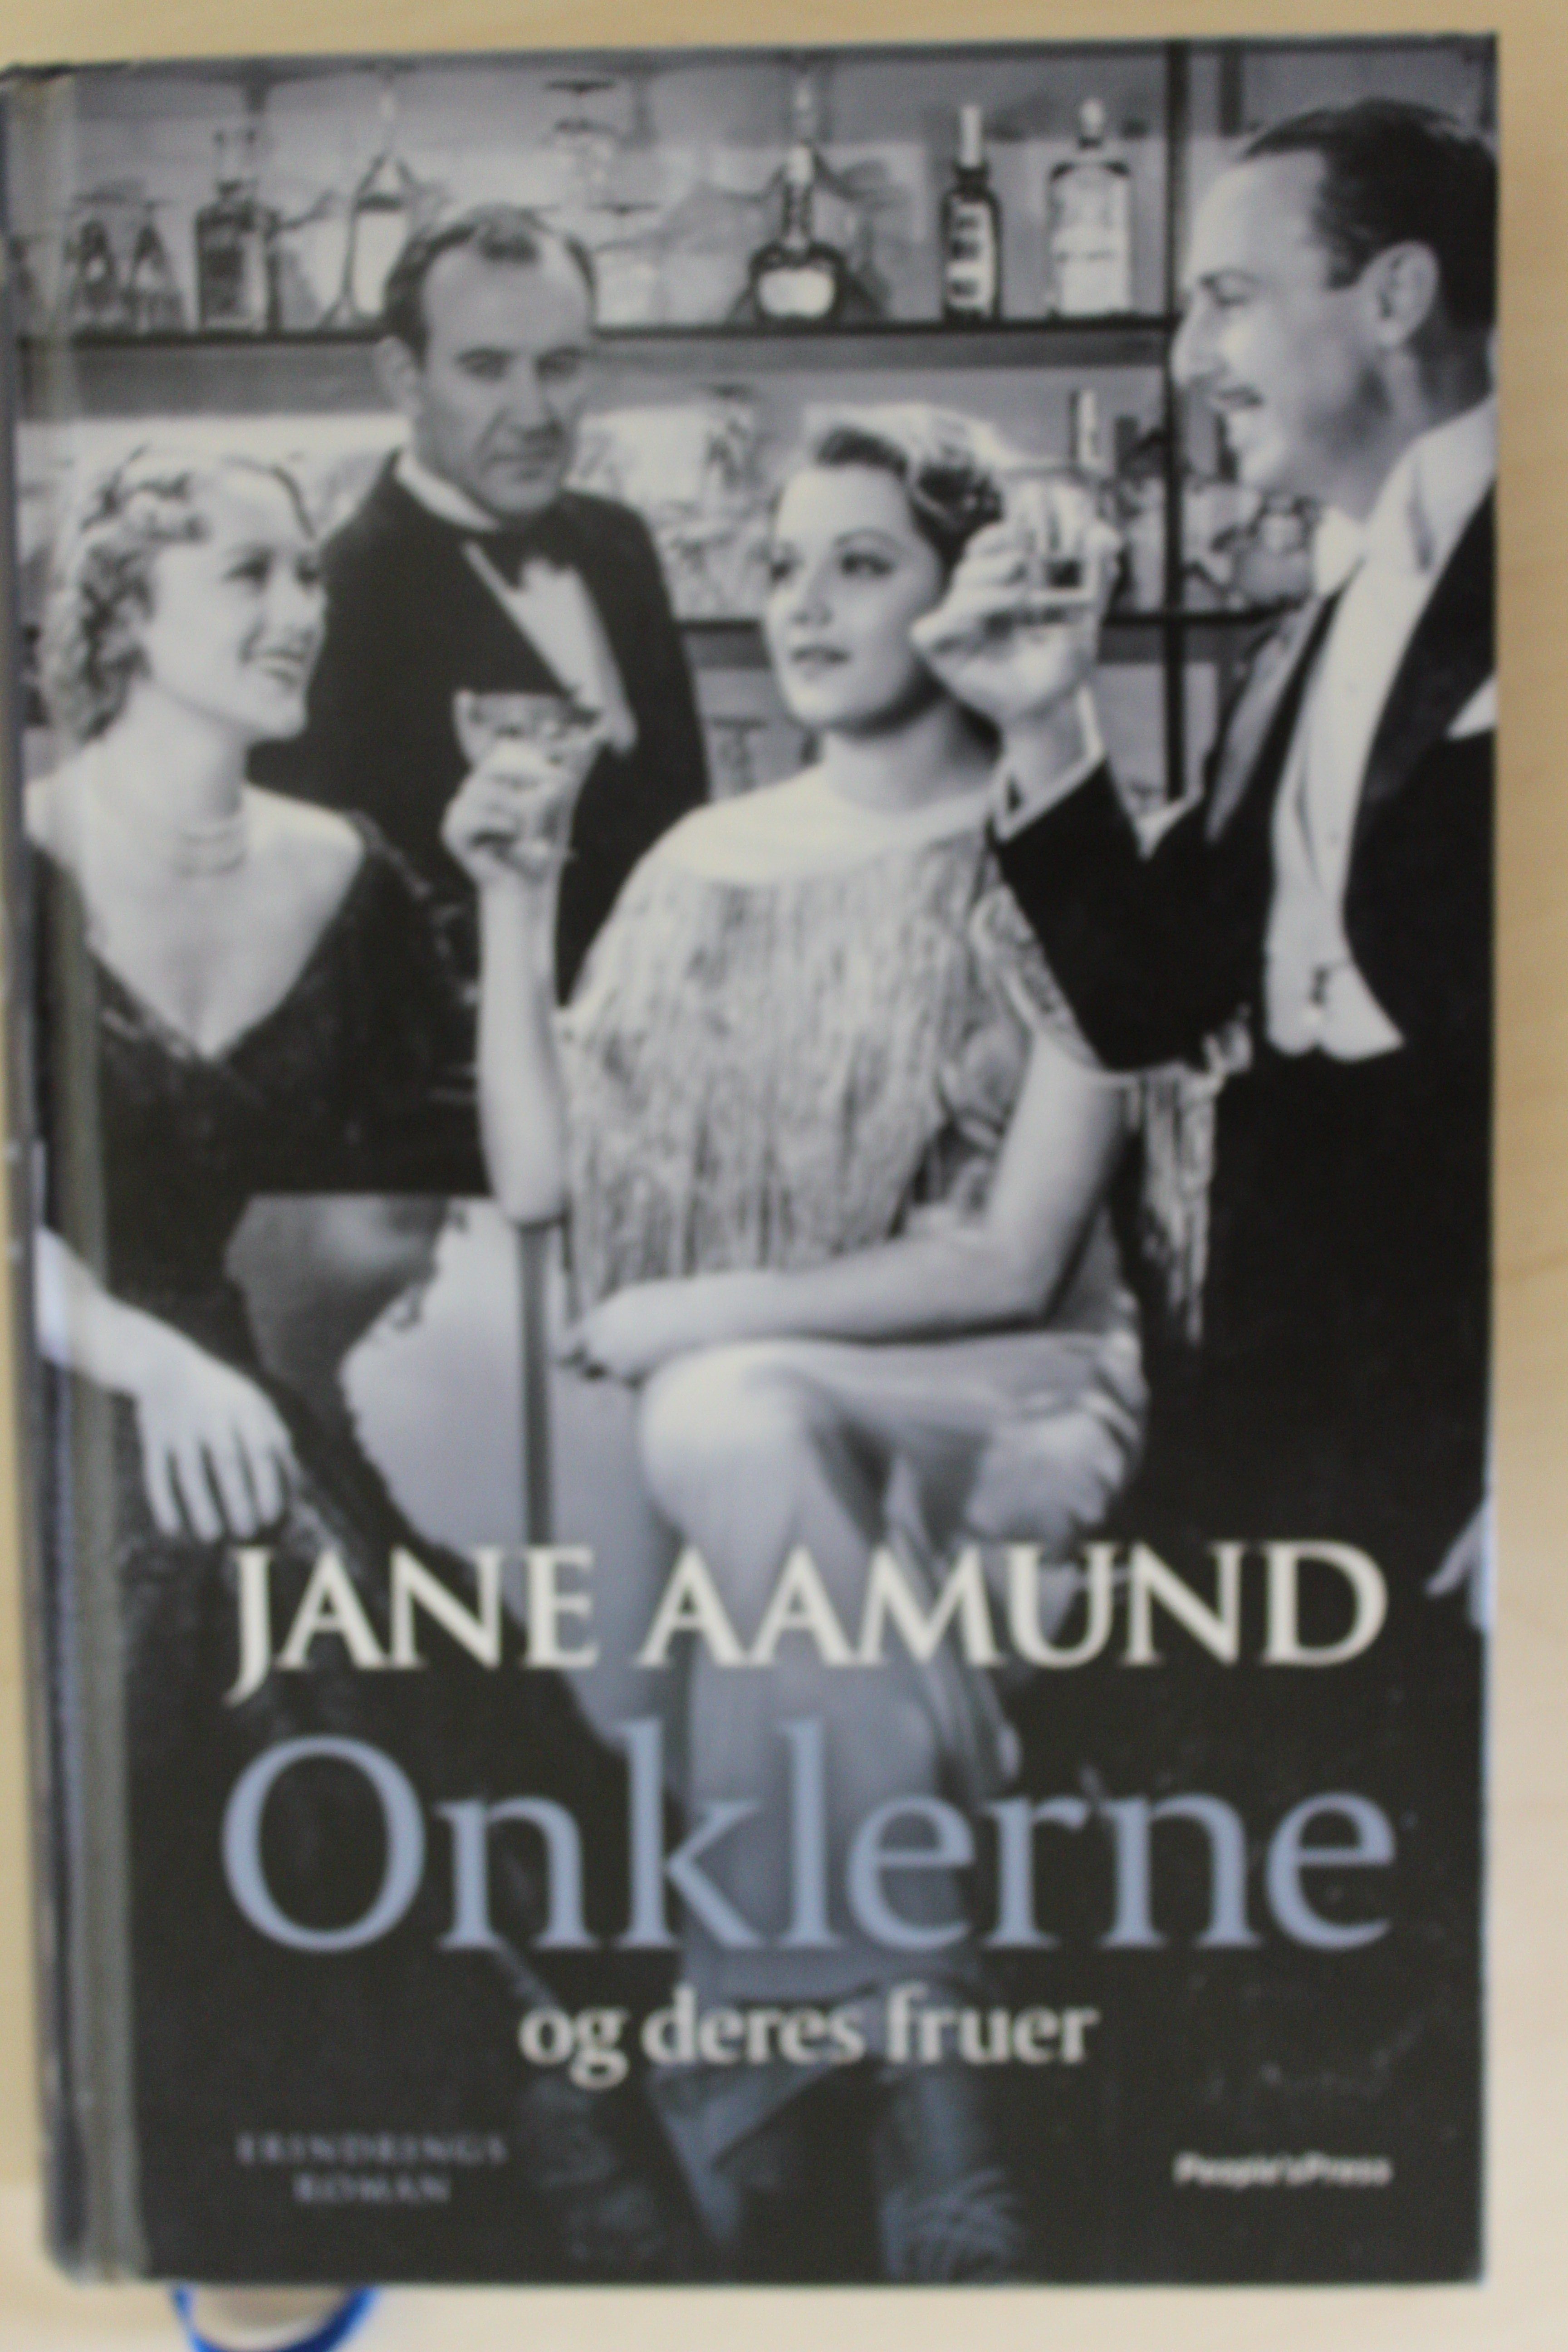 Onklerne og deres fruer af Jane Aamund